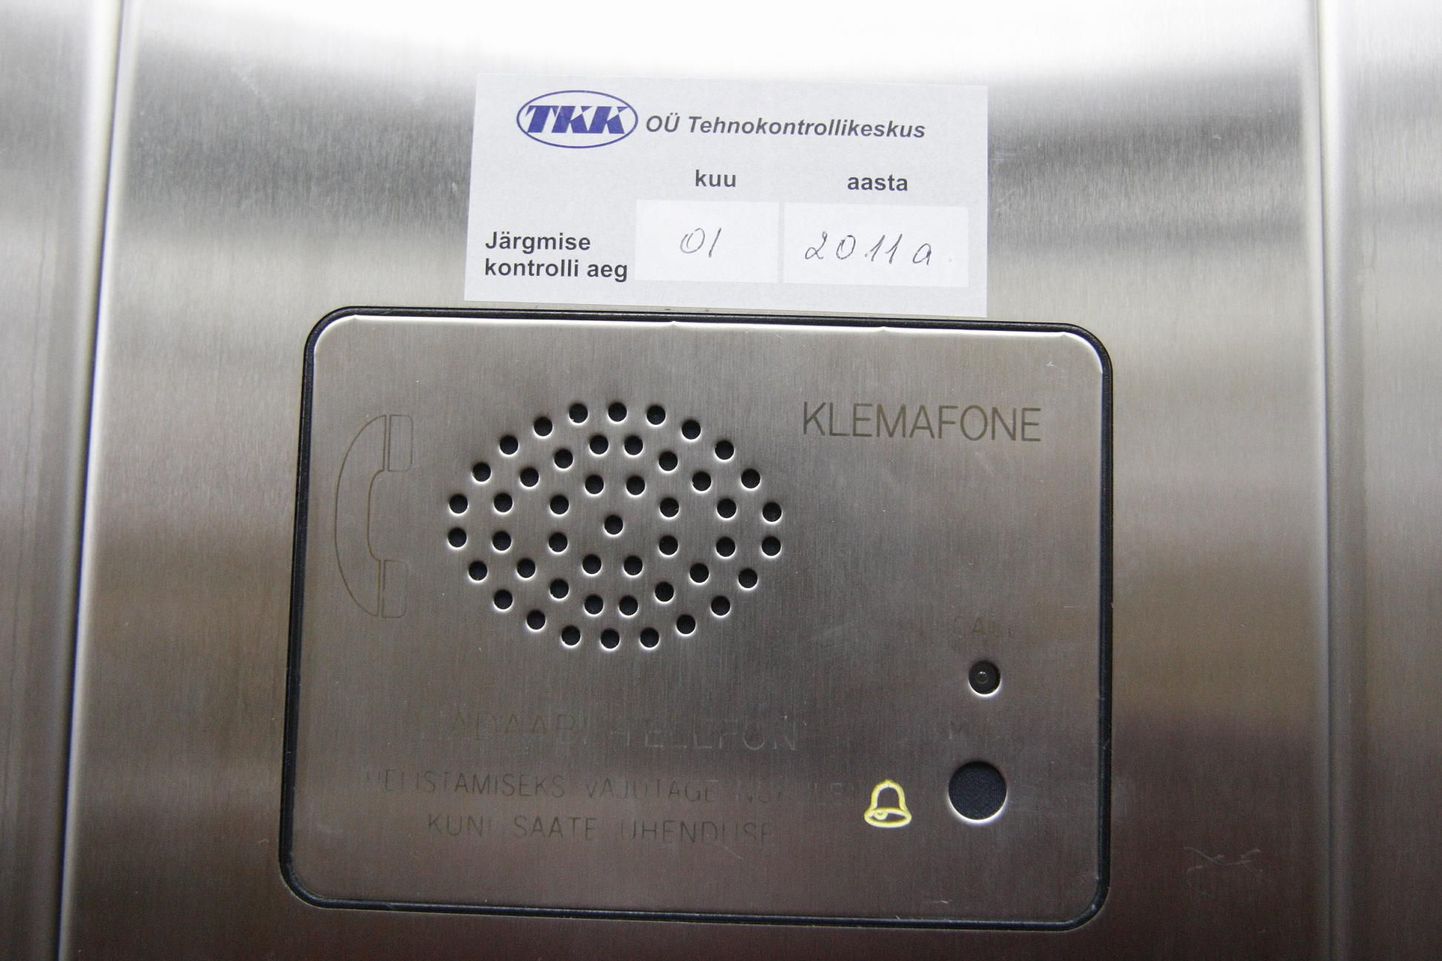 Tehnokontrollikeskus on liftide monopoolne kontrollija.